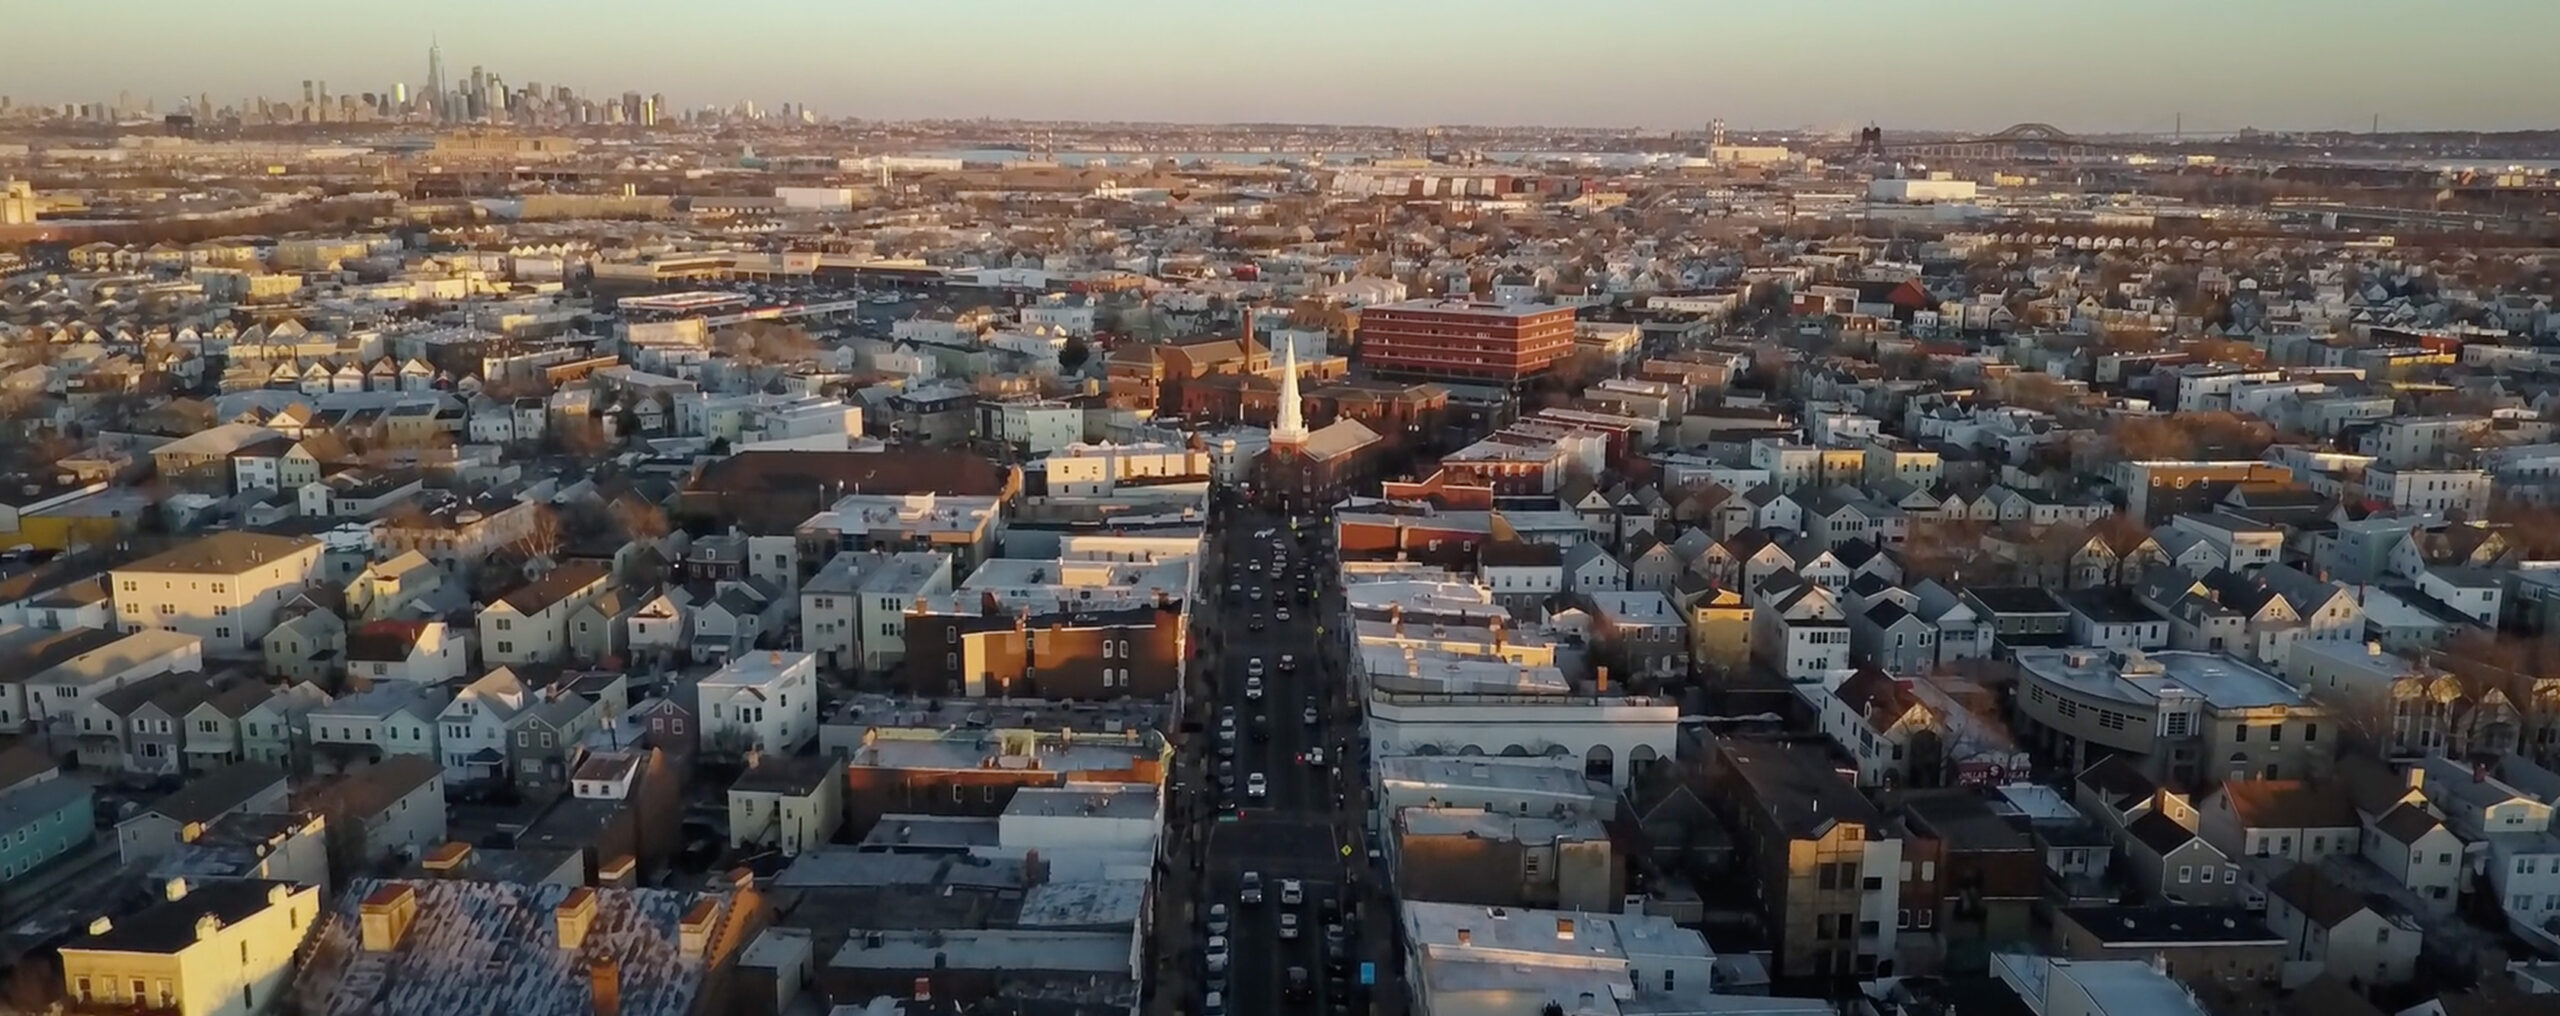 Aerial view of Newark's Ironbound district